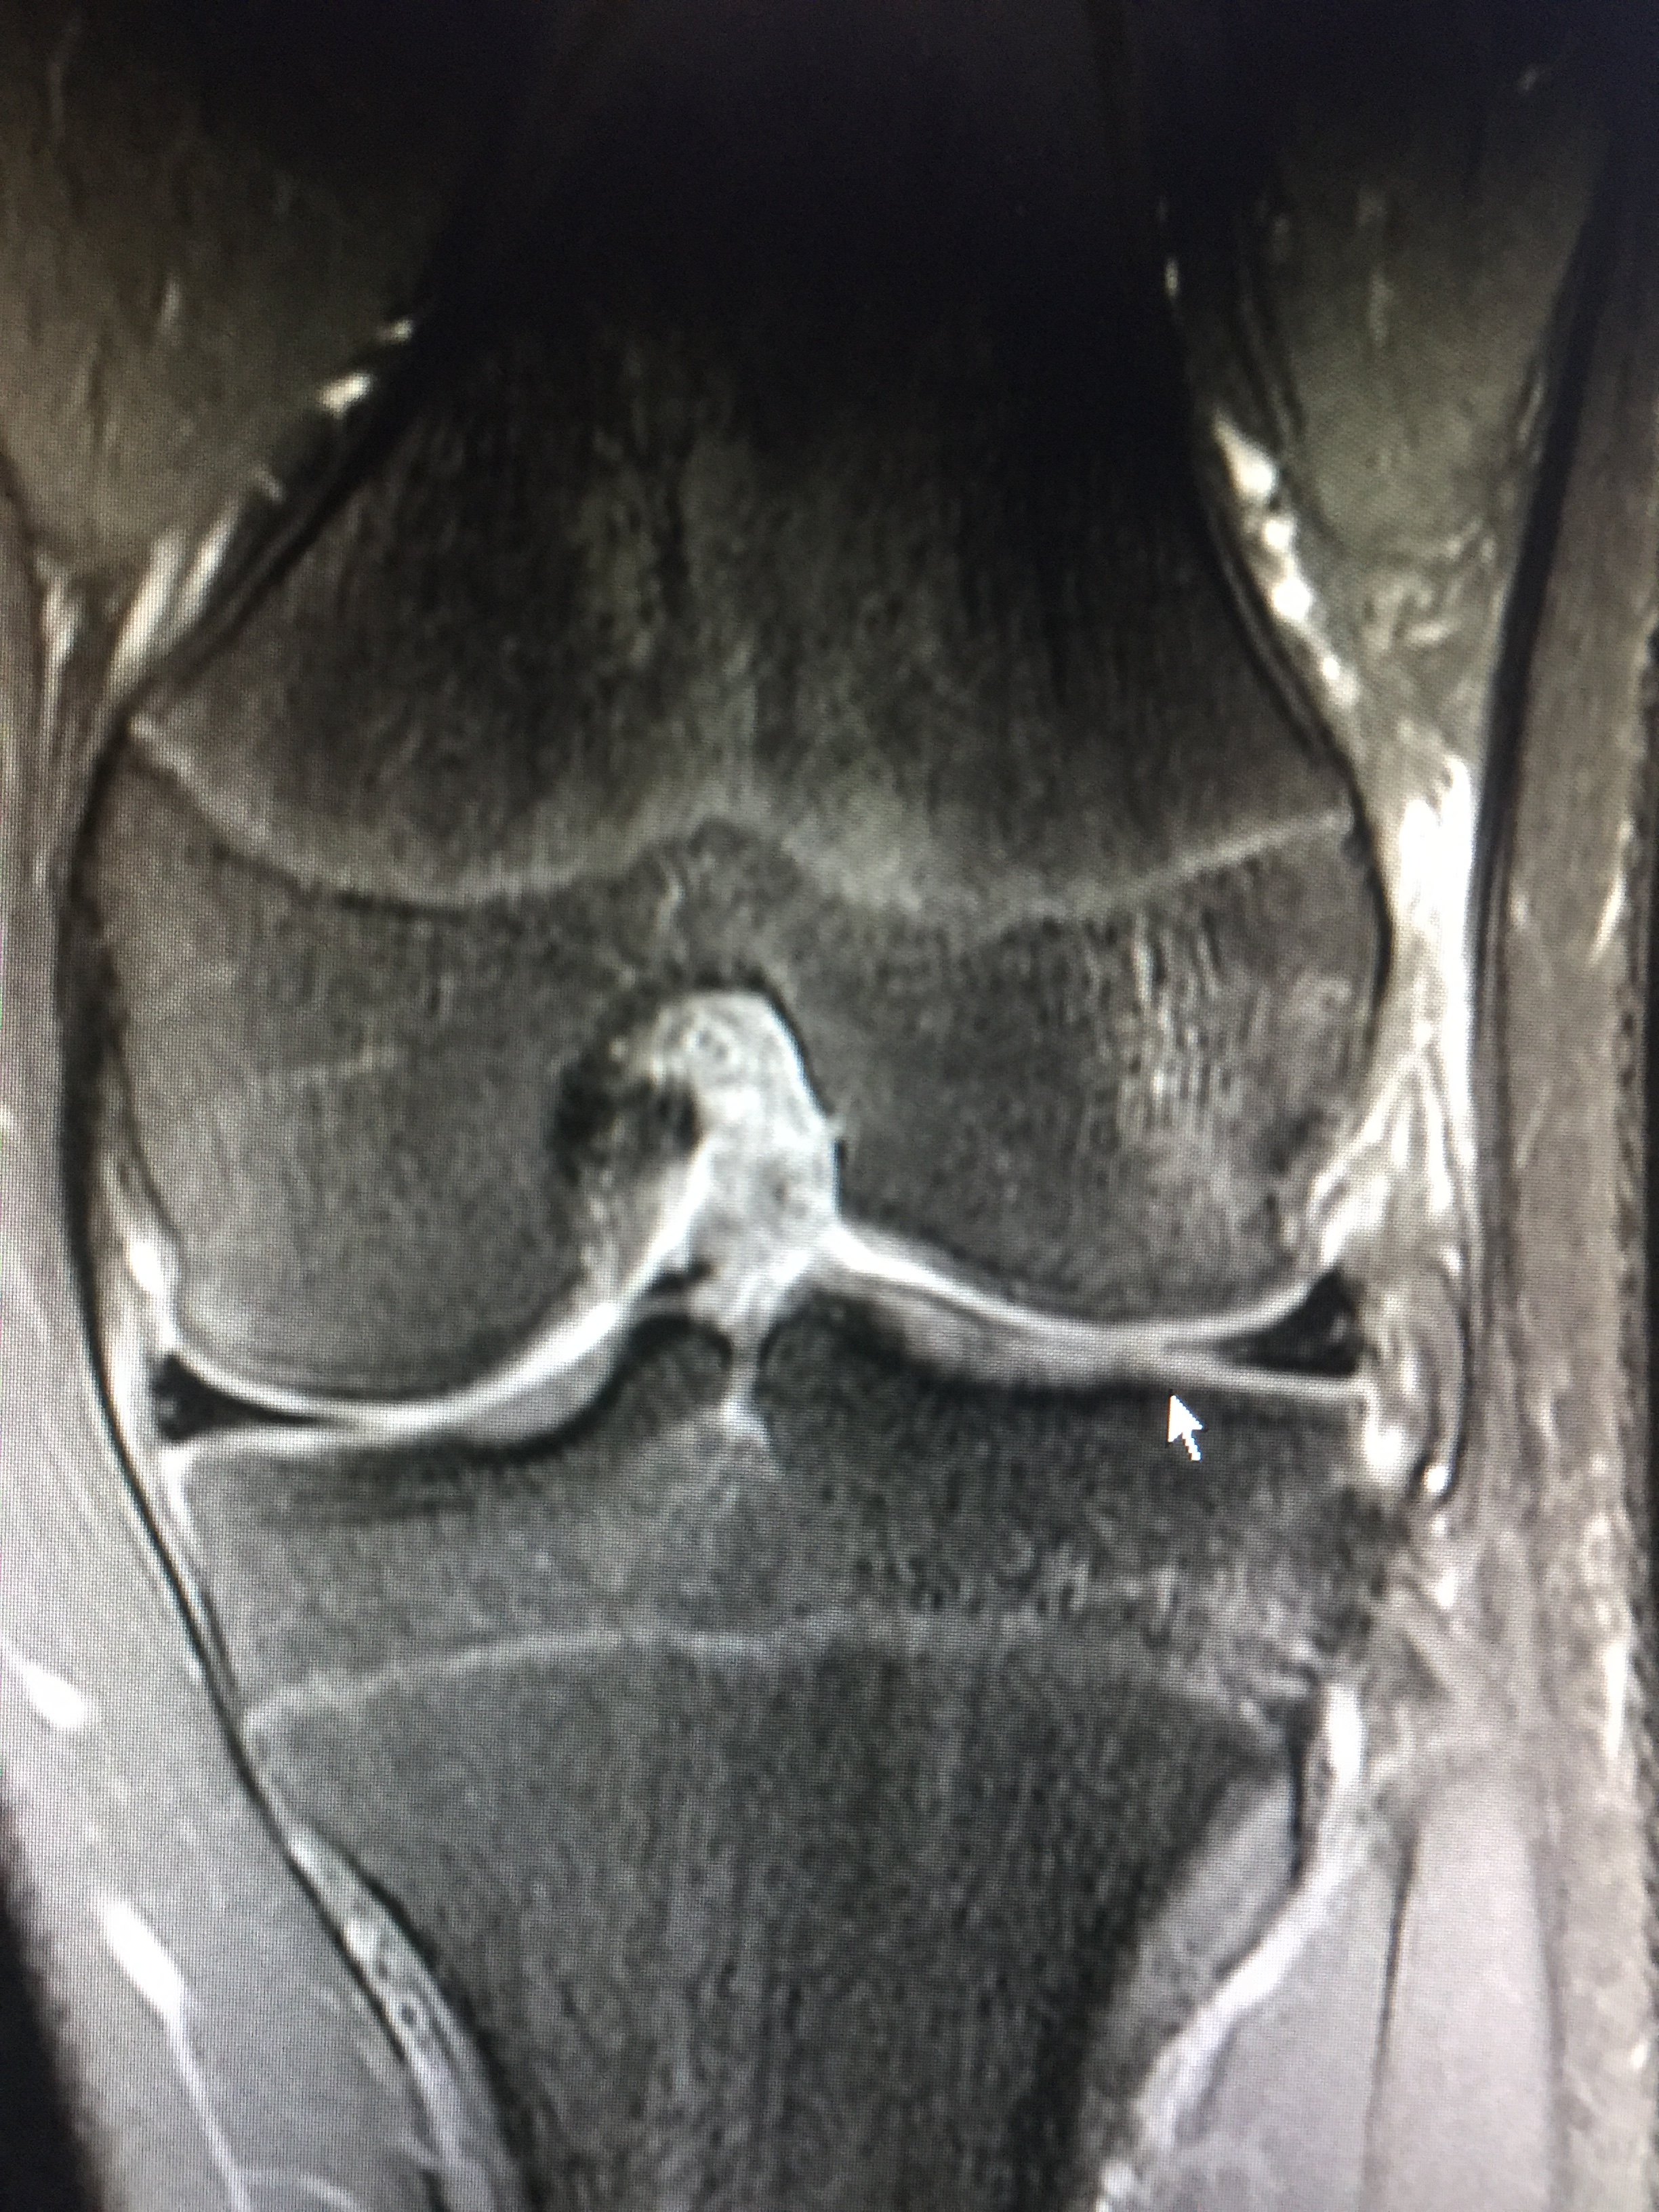 膝关节核磁前交叉韧带图片